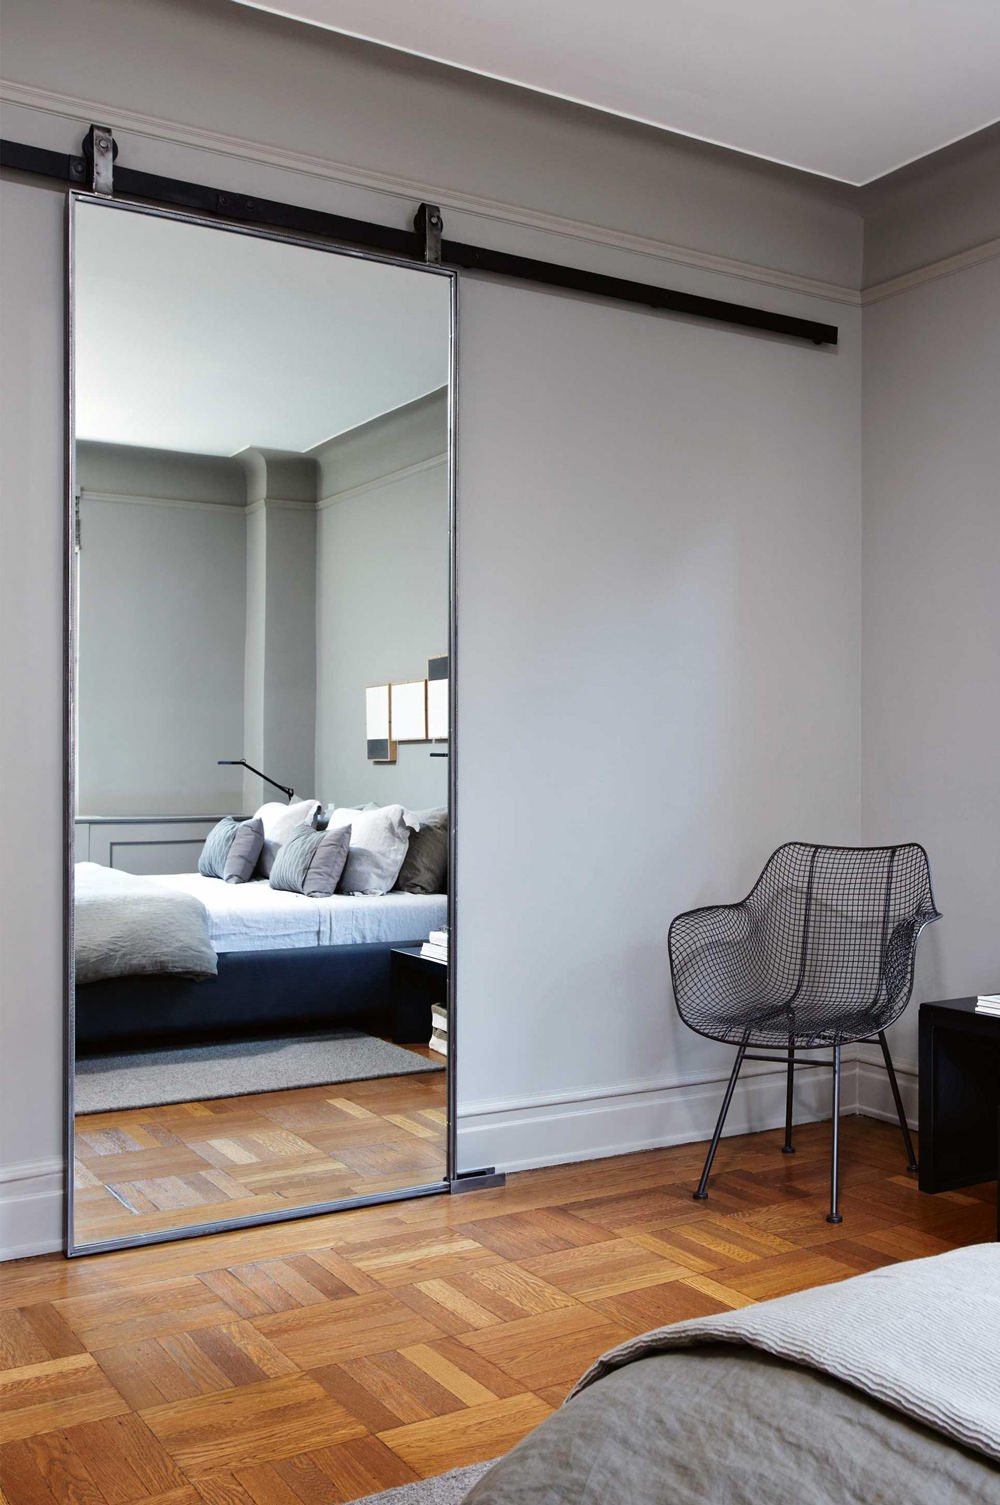 Bellissima idea di porta scorrevole a specchio con scorrimento esterno per dividere il bagno dalla camera da letto - pavimenti in legno, stanza colore grigio tortora